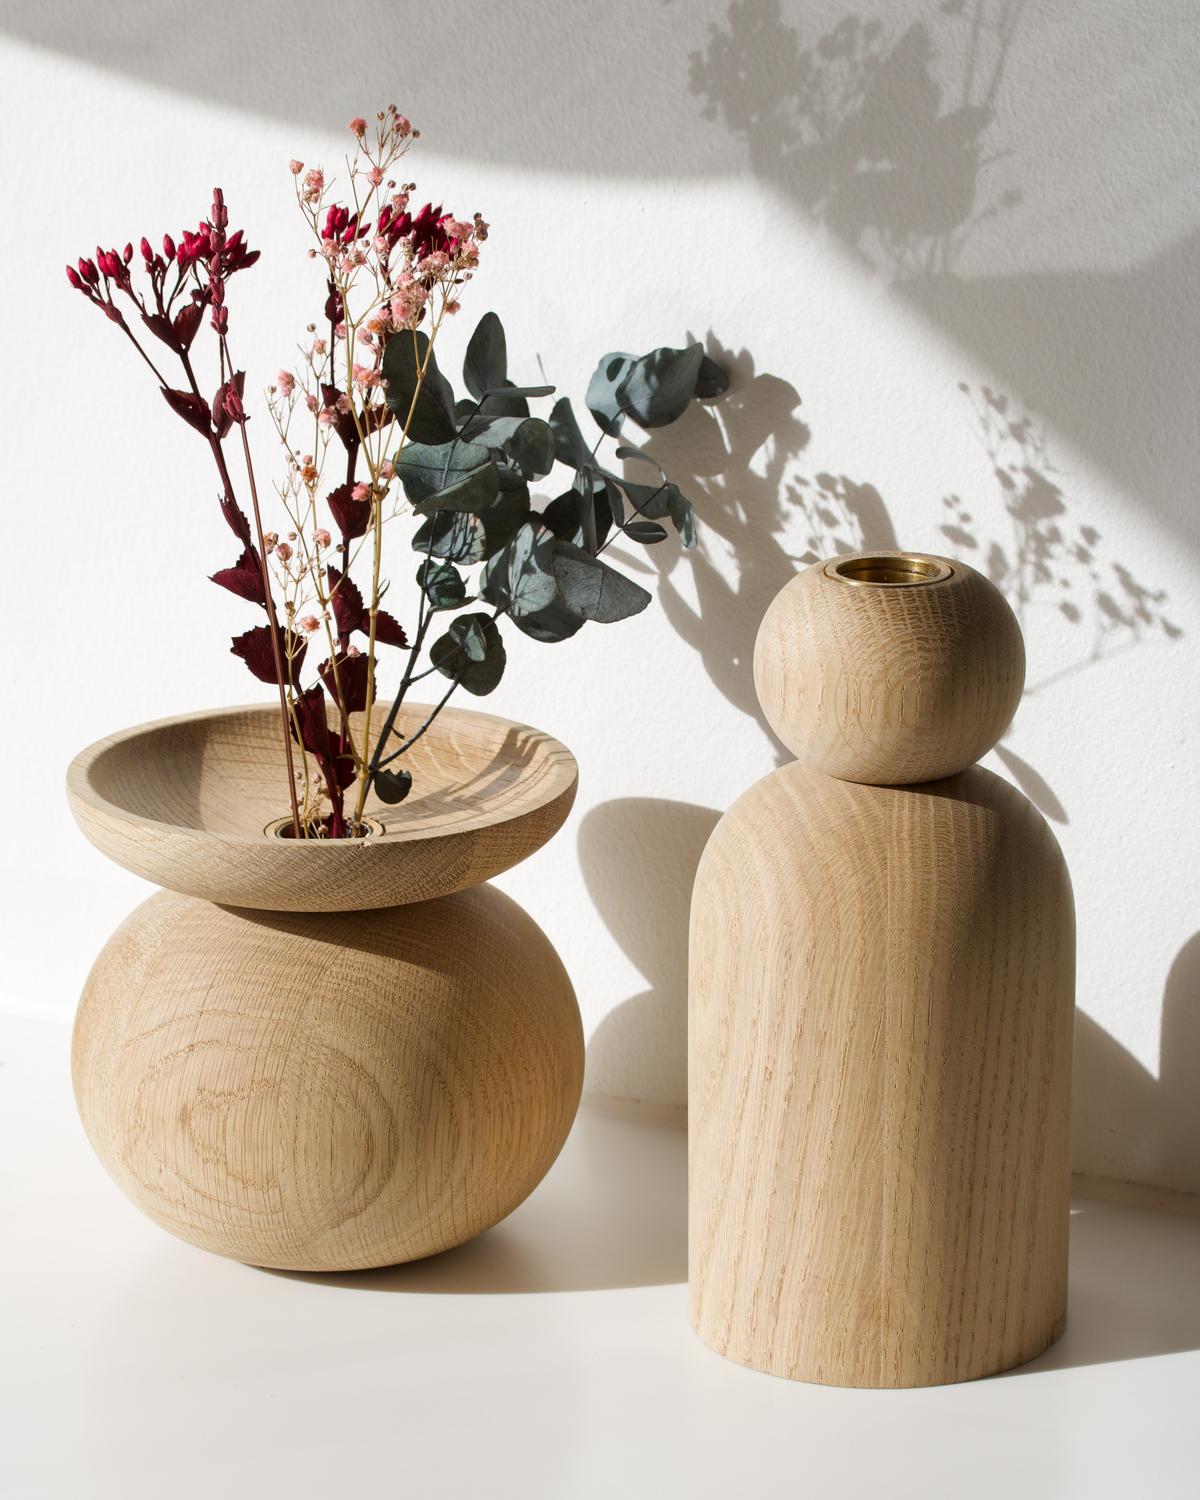 Vase en forme de bol en Oak Oak par Applicata
Dimensions : D 13 x L 13 x H 14 cm
Matériaux : Chêne.

Disponible en forme de boule, de cône et de bol.
Disponible en chêne, chêne fumé et chêne teinté noir.

La collection de vases Shape est une série